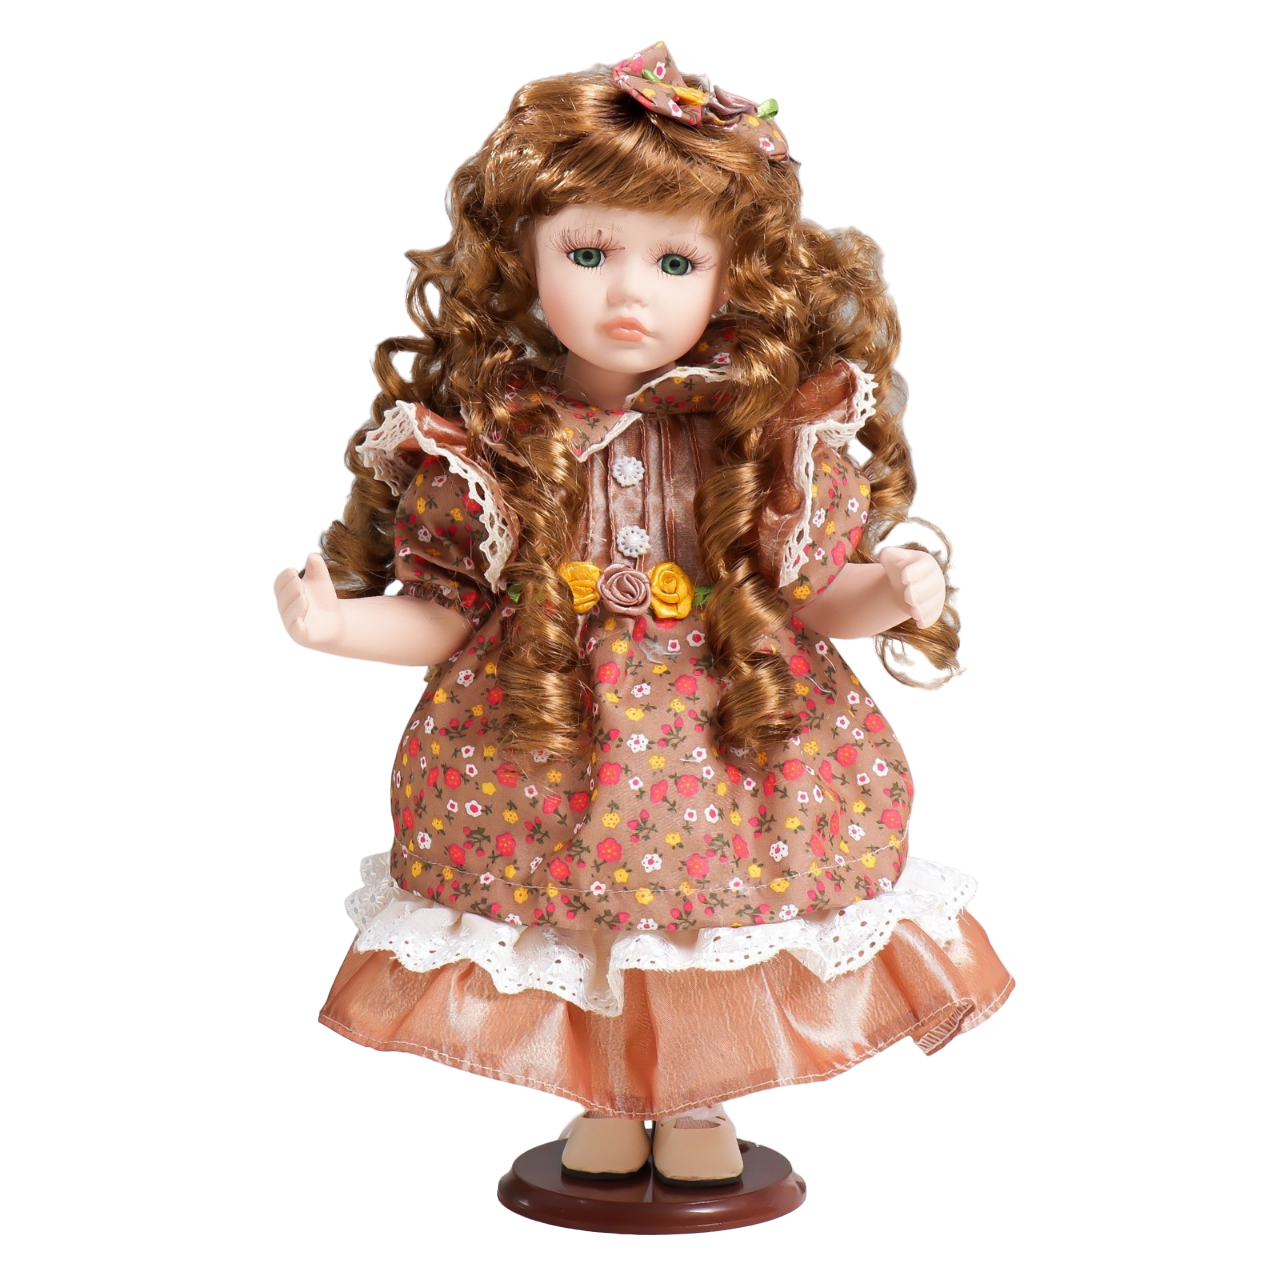 Кукла коллекционная керамика Тося в платье с мелкими цветочками, с бантом в волосах 30 см кукла коллекционная керамика тося в платье с мелкими очками с бантом в волосах 30 см